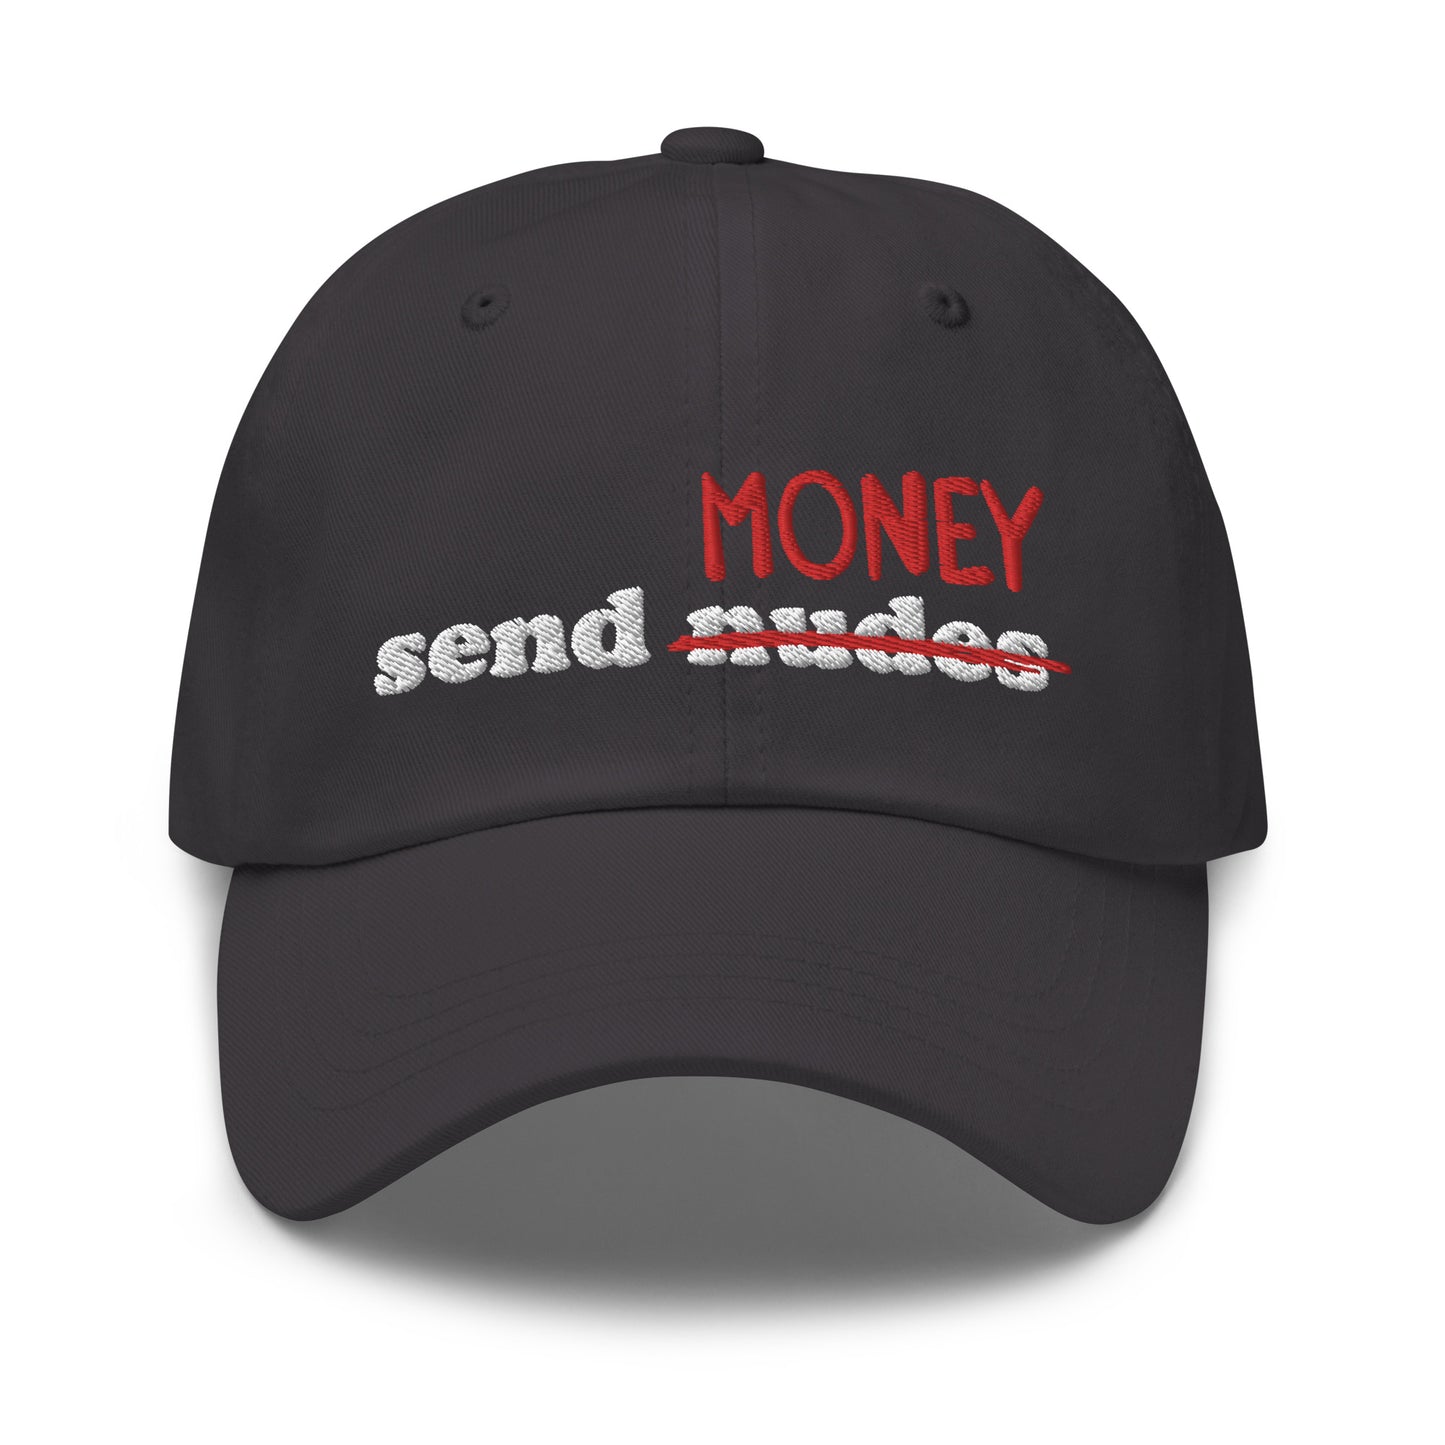 Send Money hat